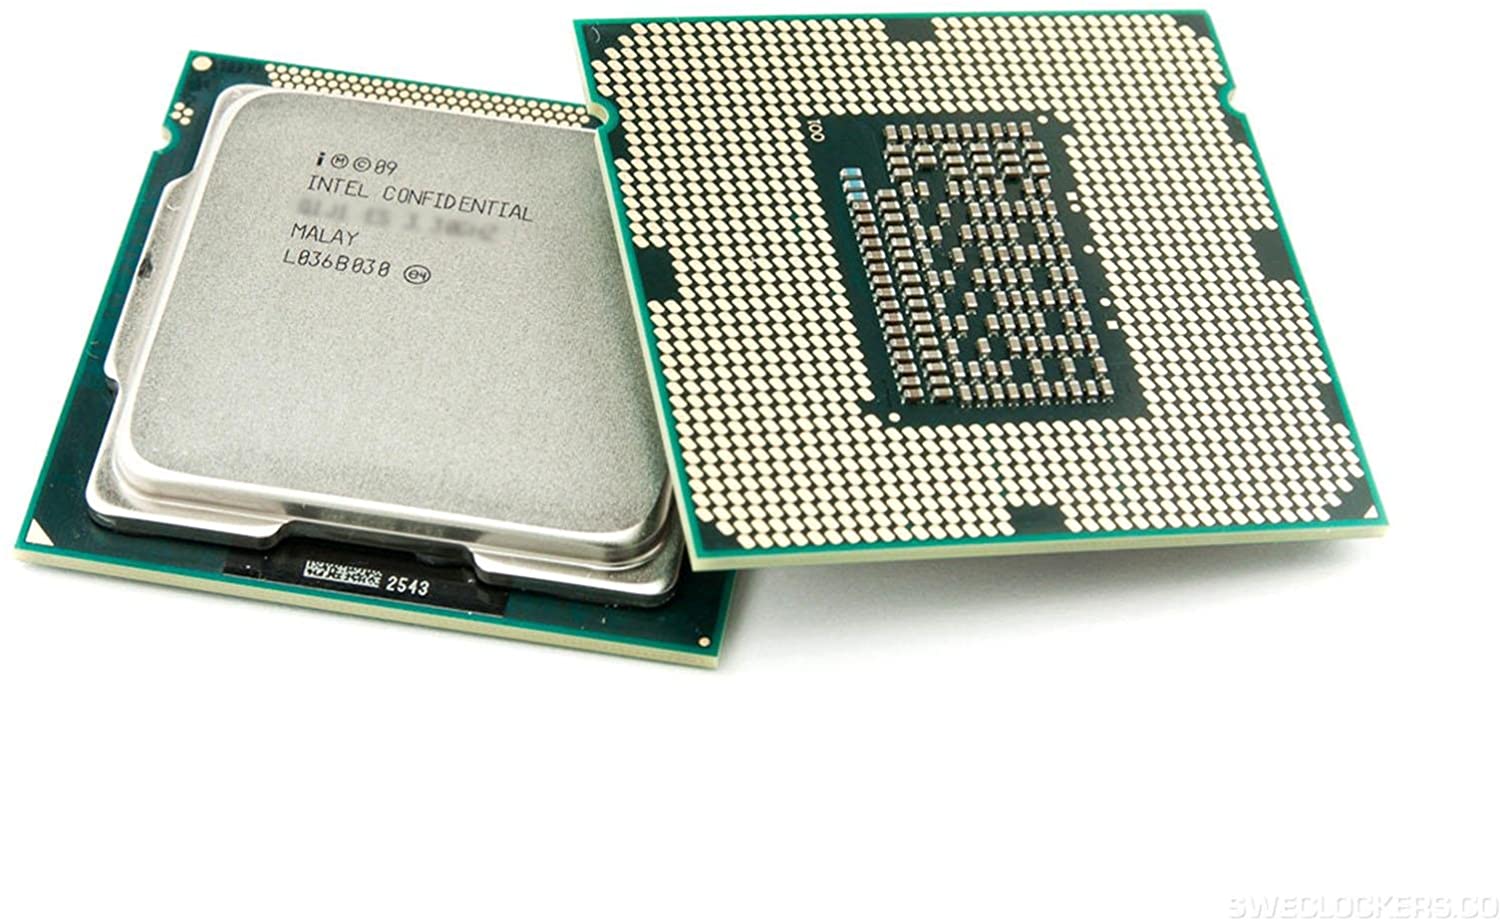 Що за процесор Intel Celeron?